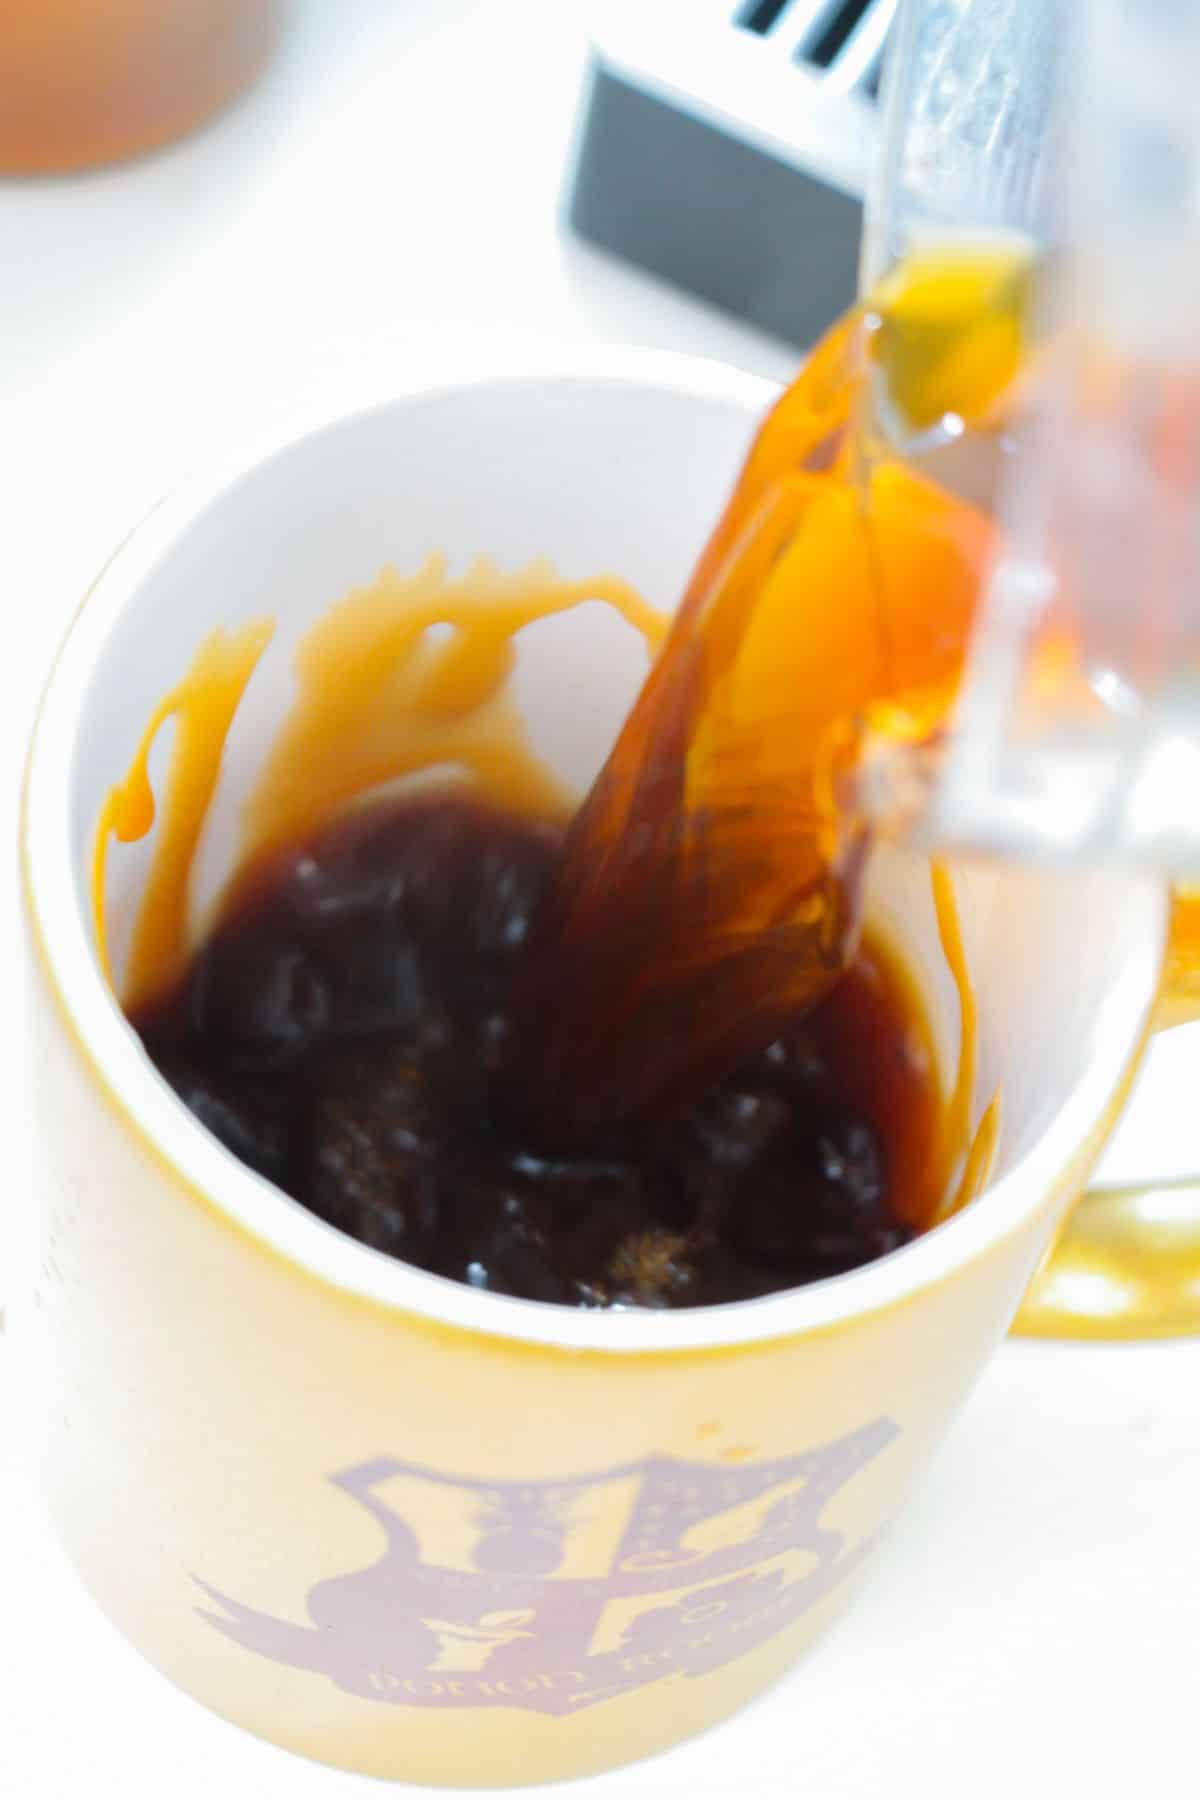 Added the espresso into the mug.